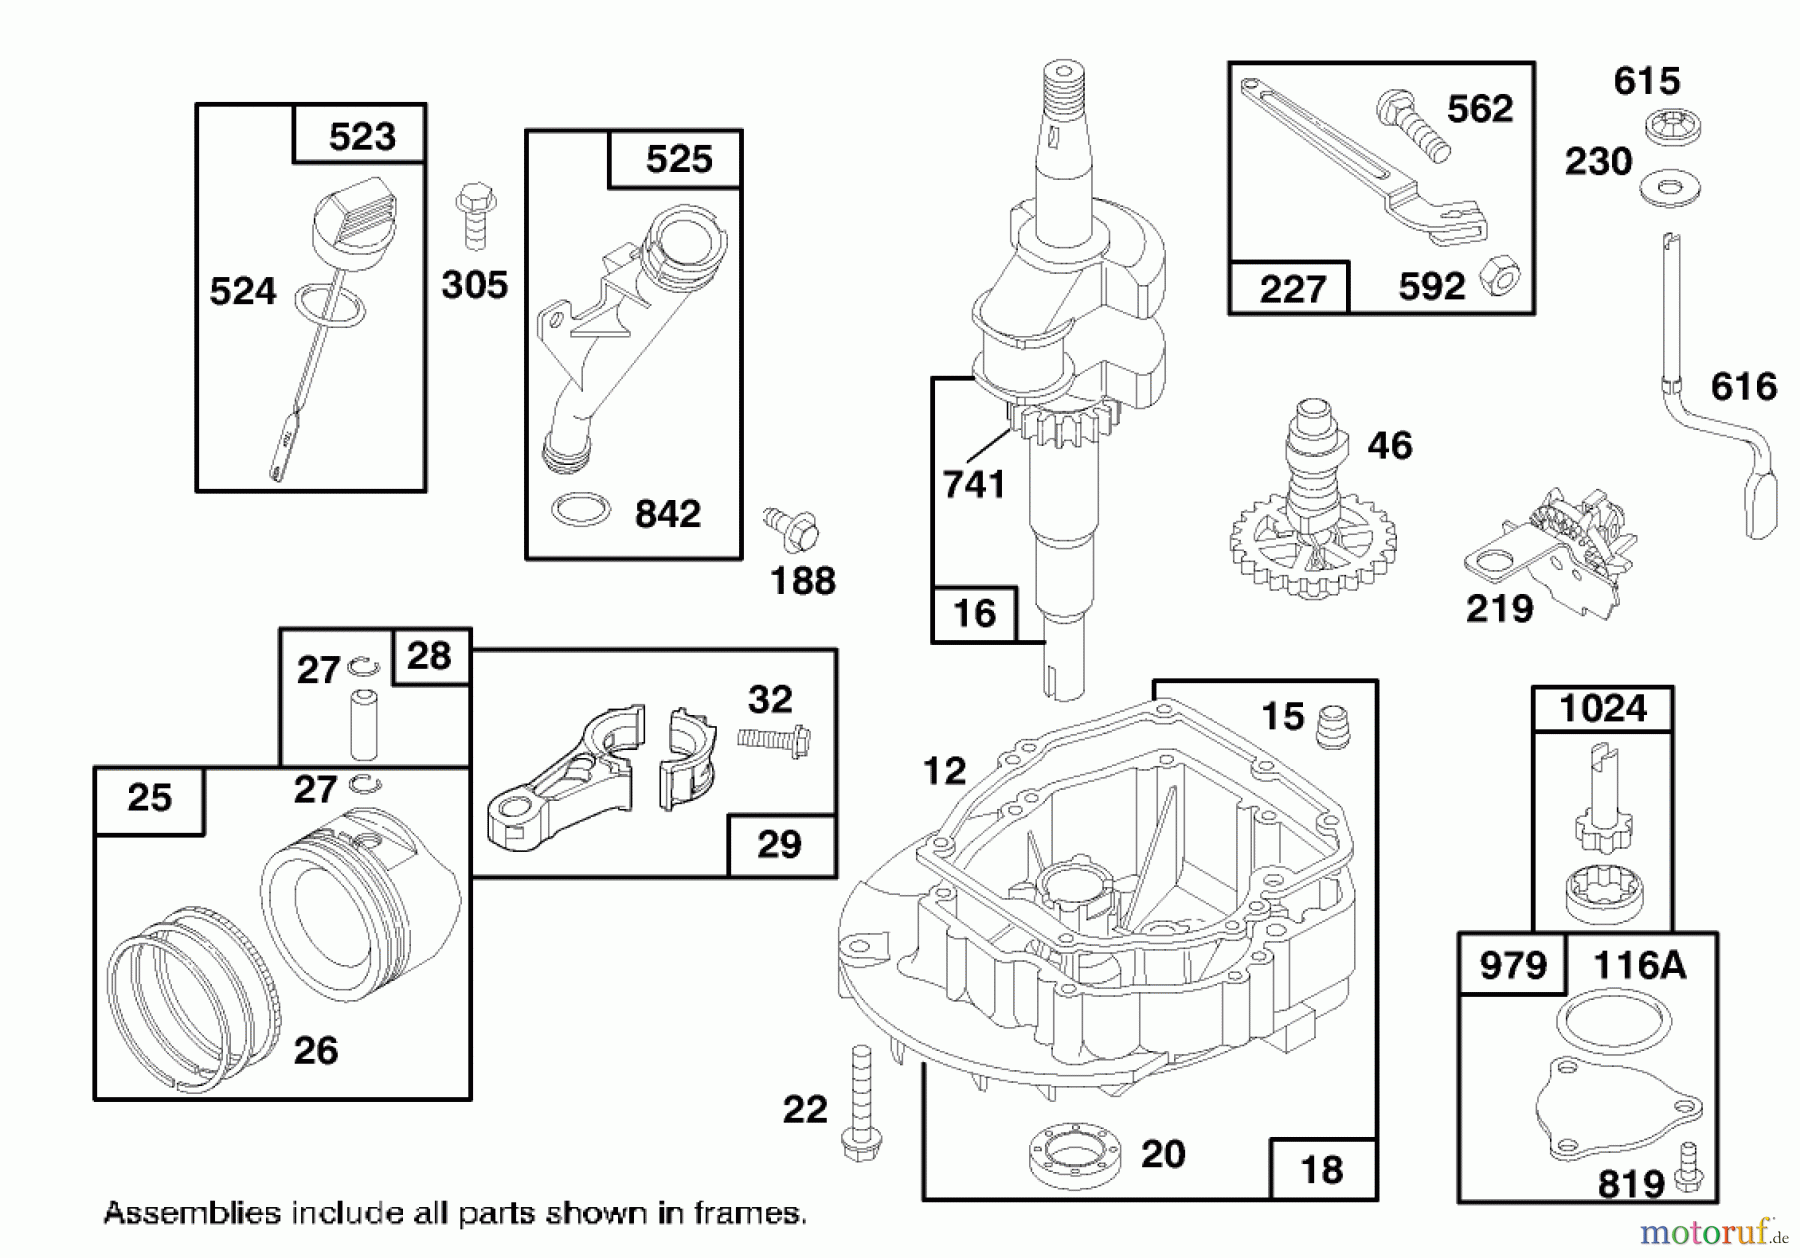  Toro Neu Mowers, Walk-Behind Seite 1 20474 - Toro Super Recycler Lawnmower, 1996 (6900001-6999999) ENGINE GTS 150 #2